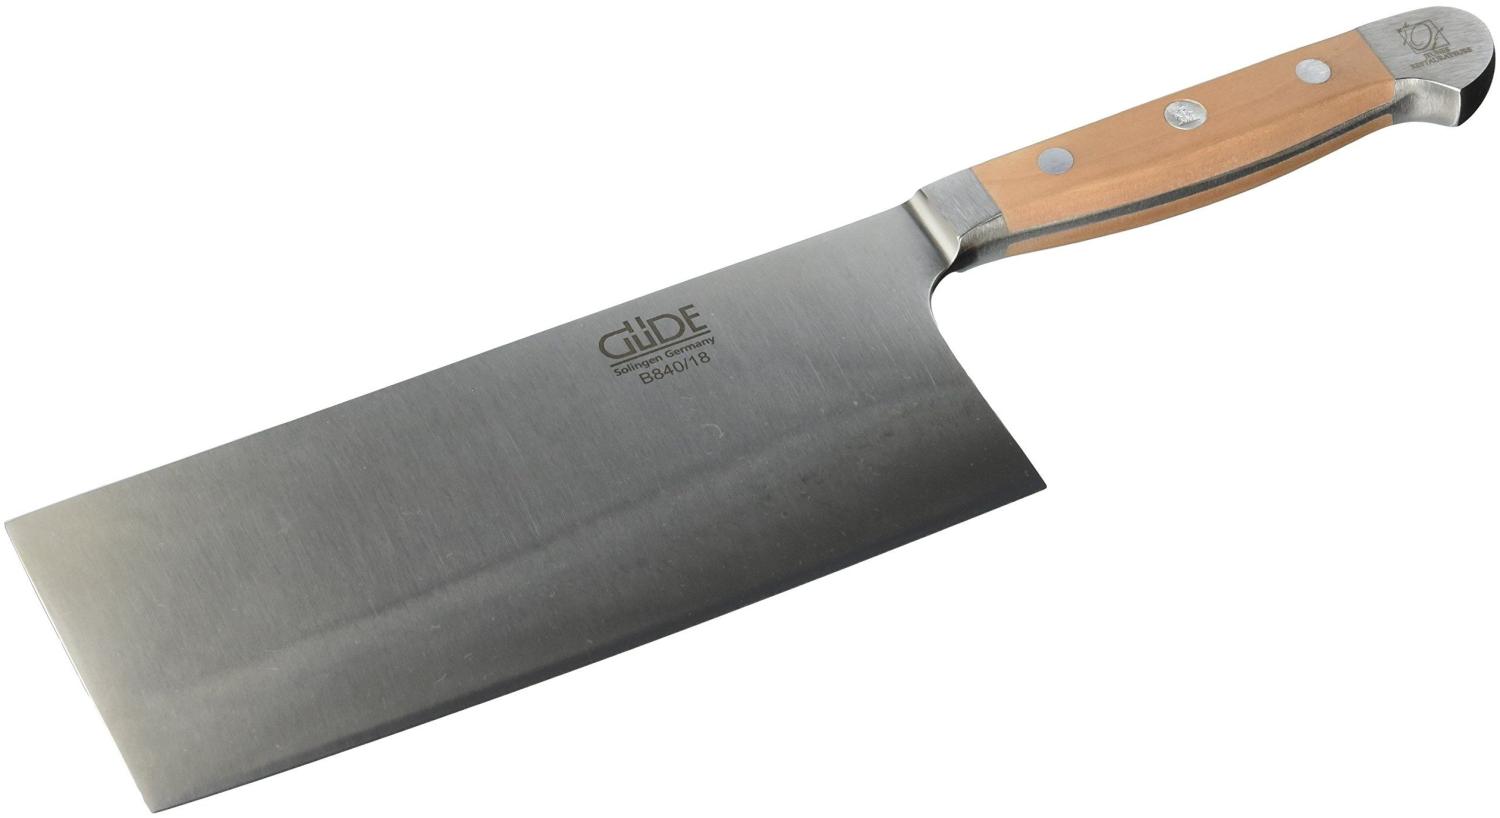 Güde ALPHA-Birne Brotmesser, Hackmesser 18 cm Küchenmesser - Geschmiedet - Solingen, Messer - groß - scharf - hochwertig Bild 1